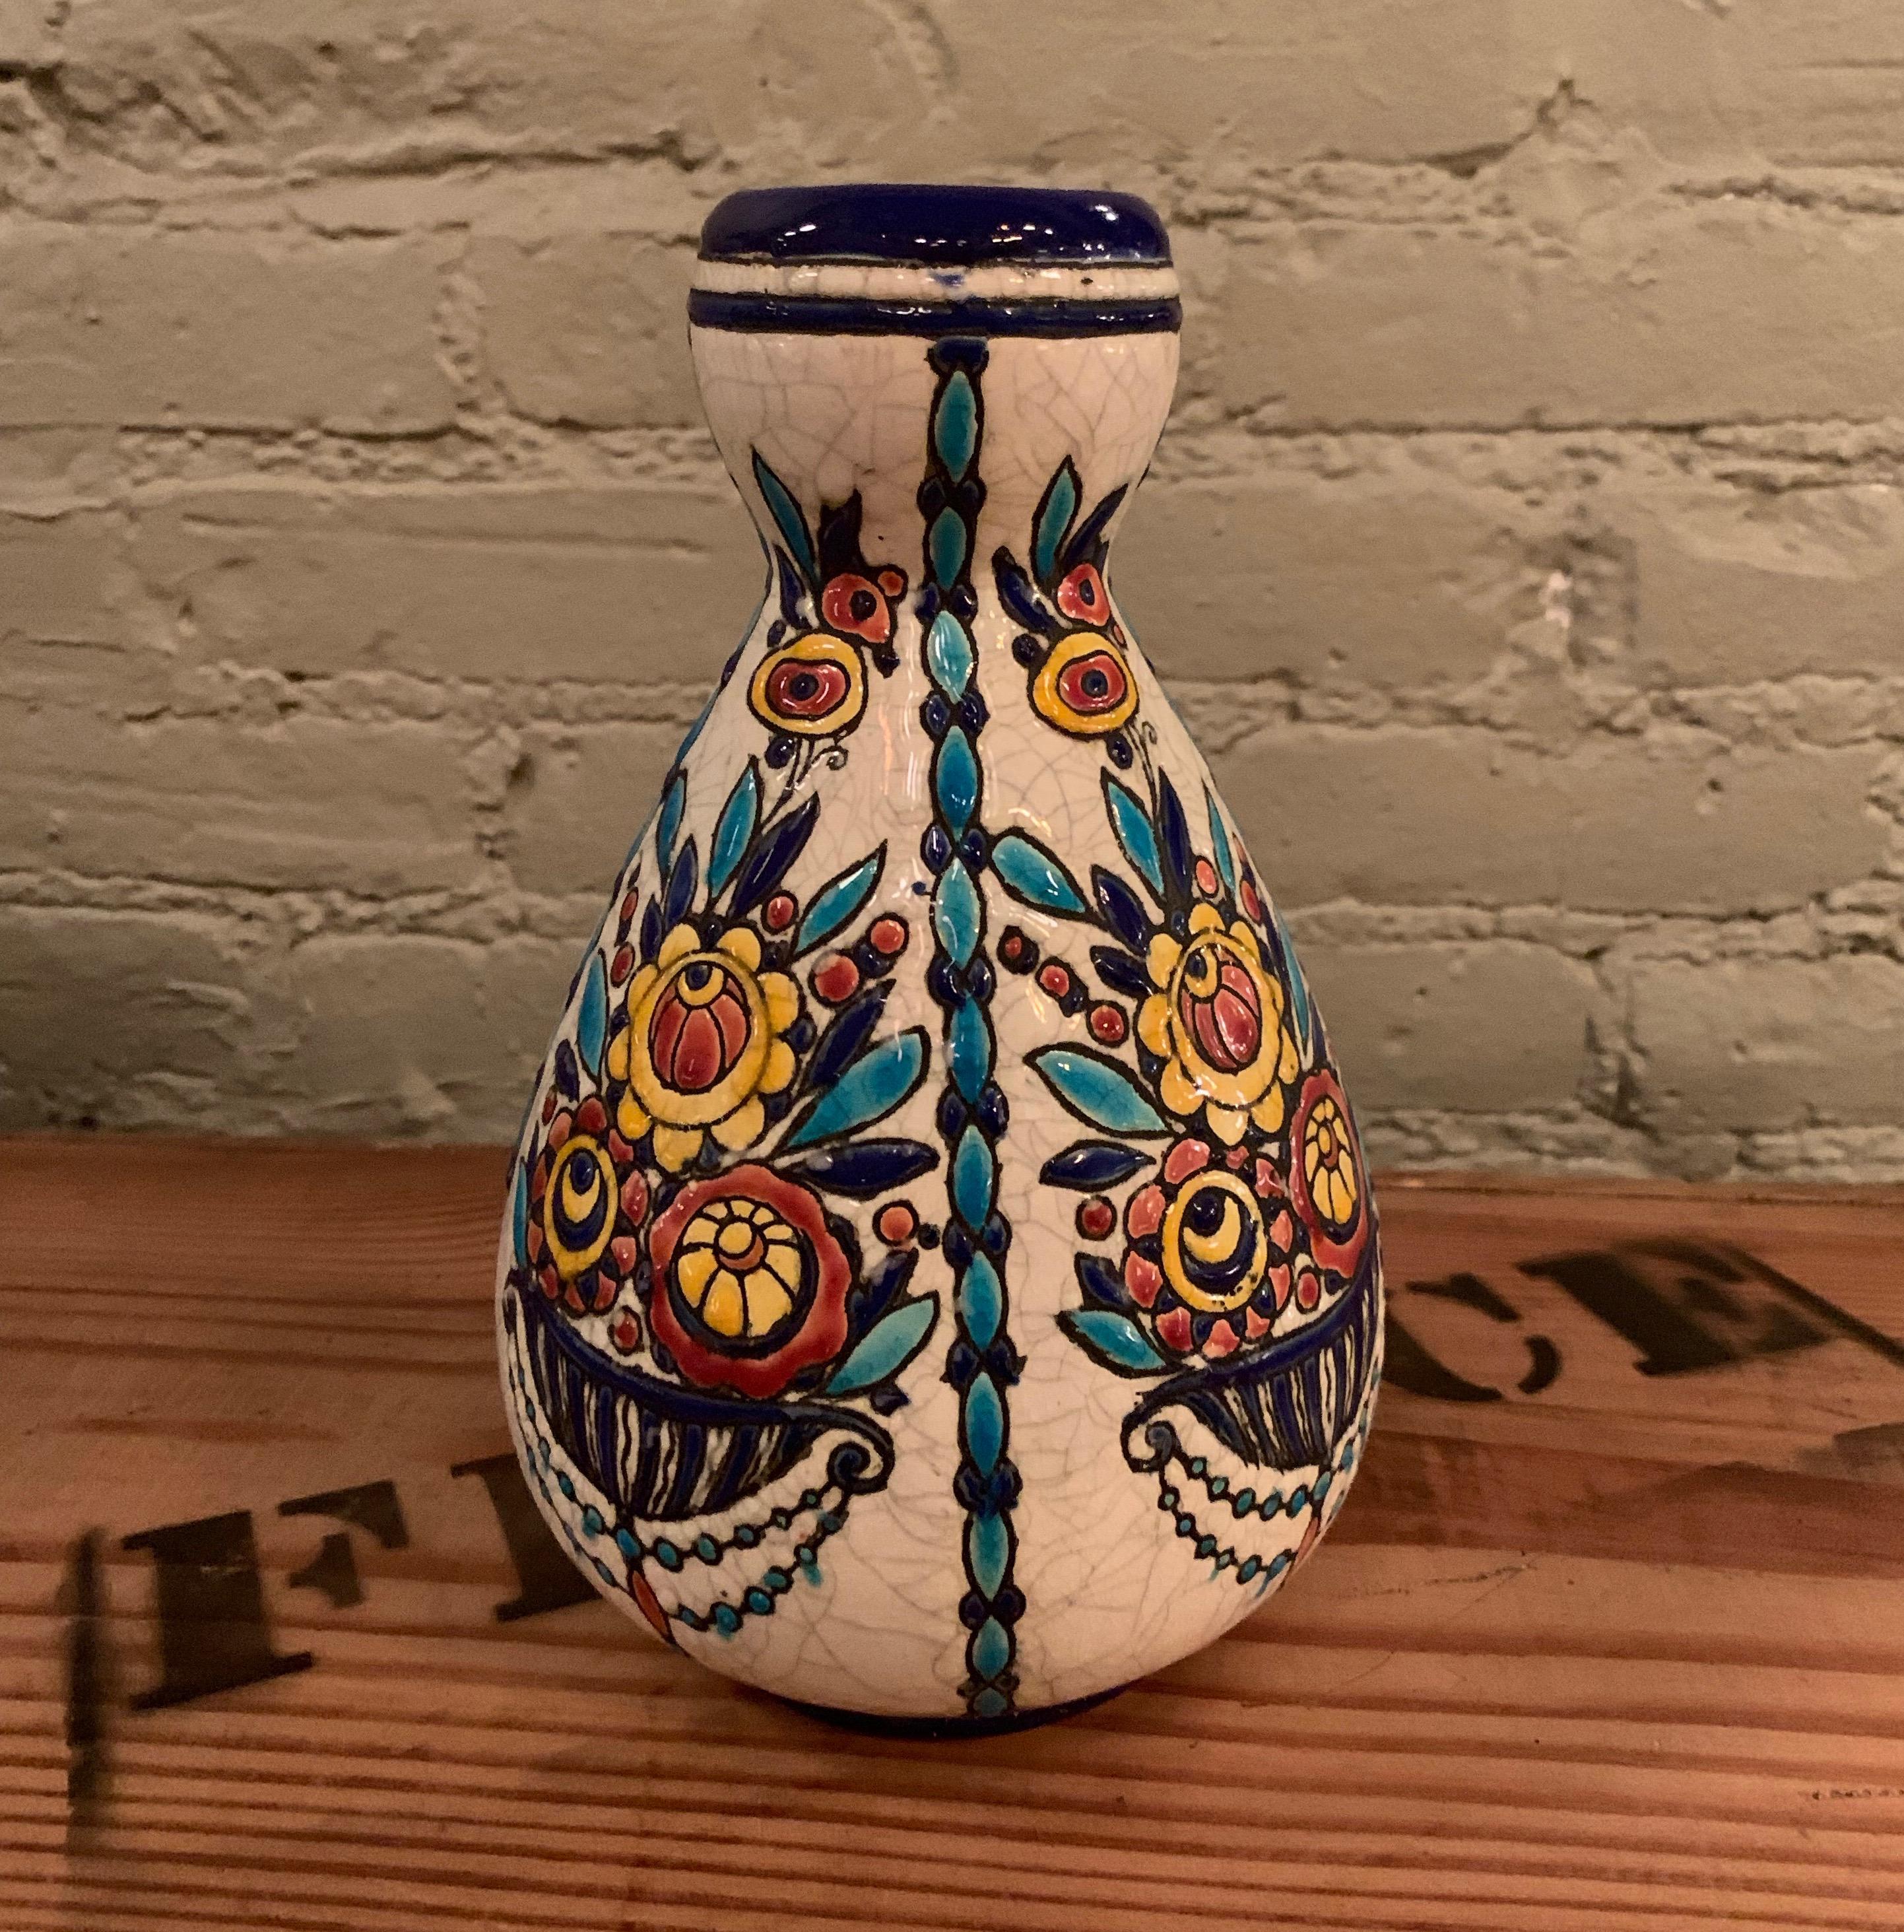 Vase en émail peint à la main, conçu par Charles Catteau pour Boch Frères Keramis ; fabriqué à La Louvière, en Belgique, dans les années 1930. Le fond porte la marque officielle de Boch Frères, ainsi que le numéro 